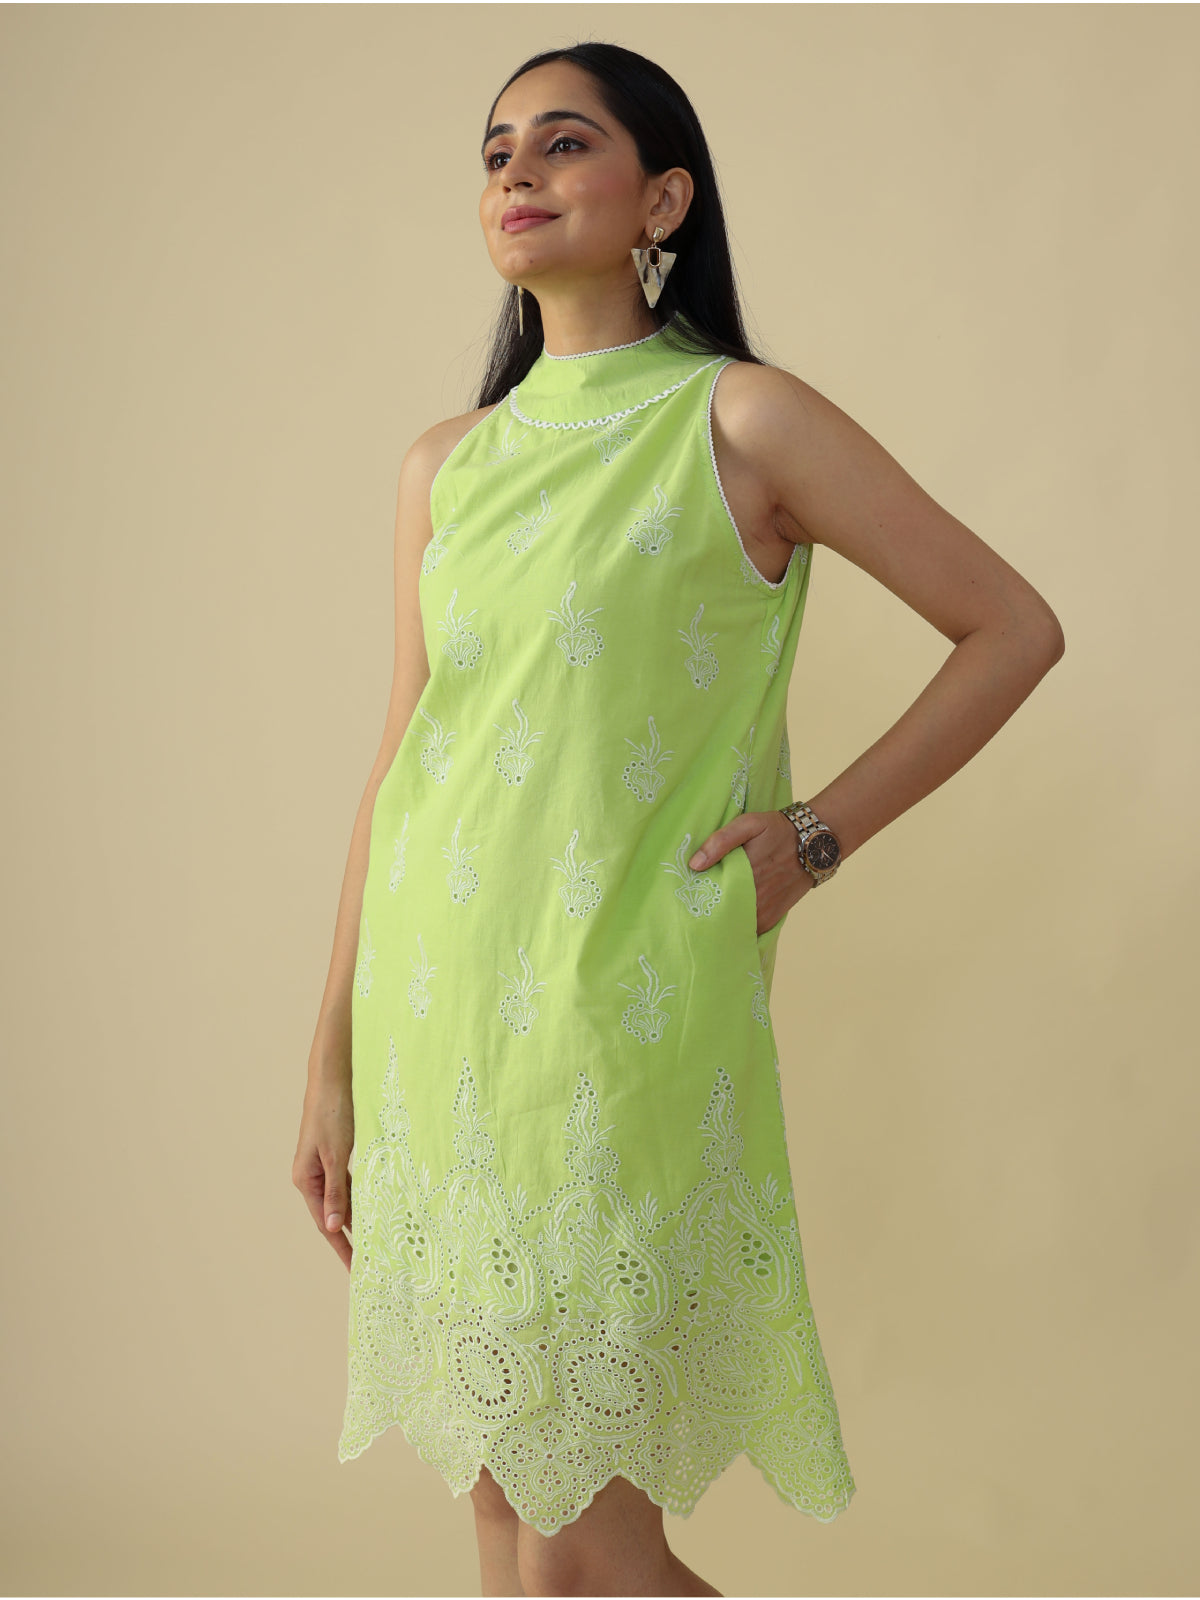 Lush Green in Cut Band Collar Dress - CHIKARI